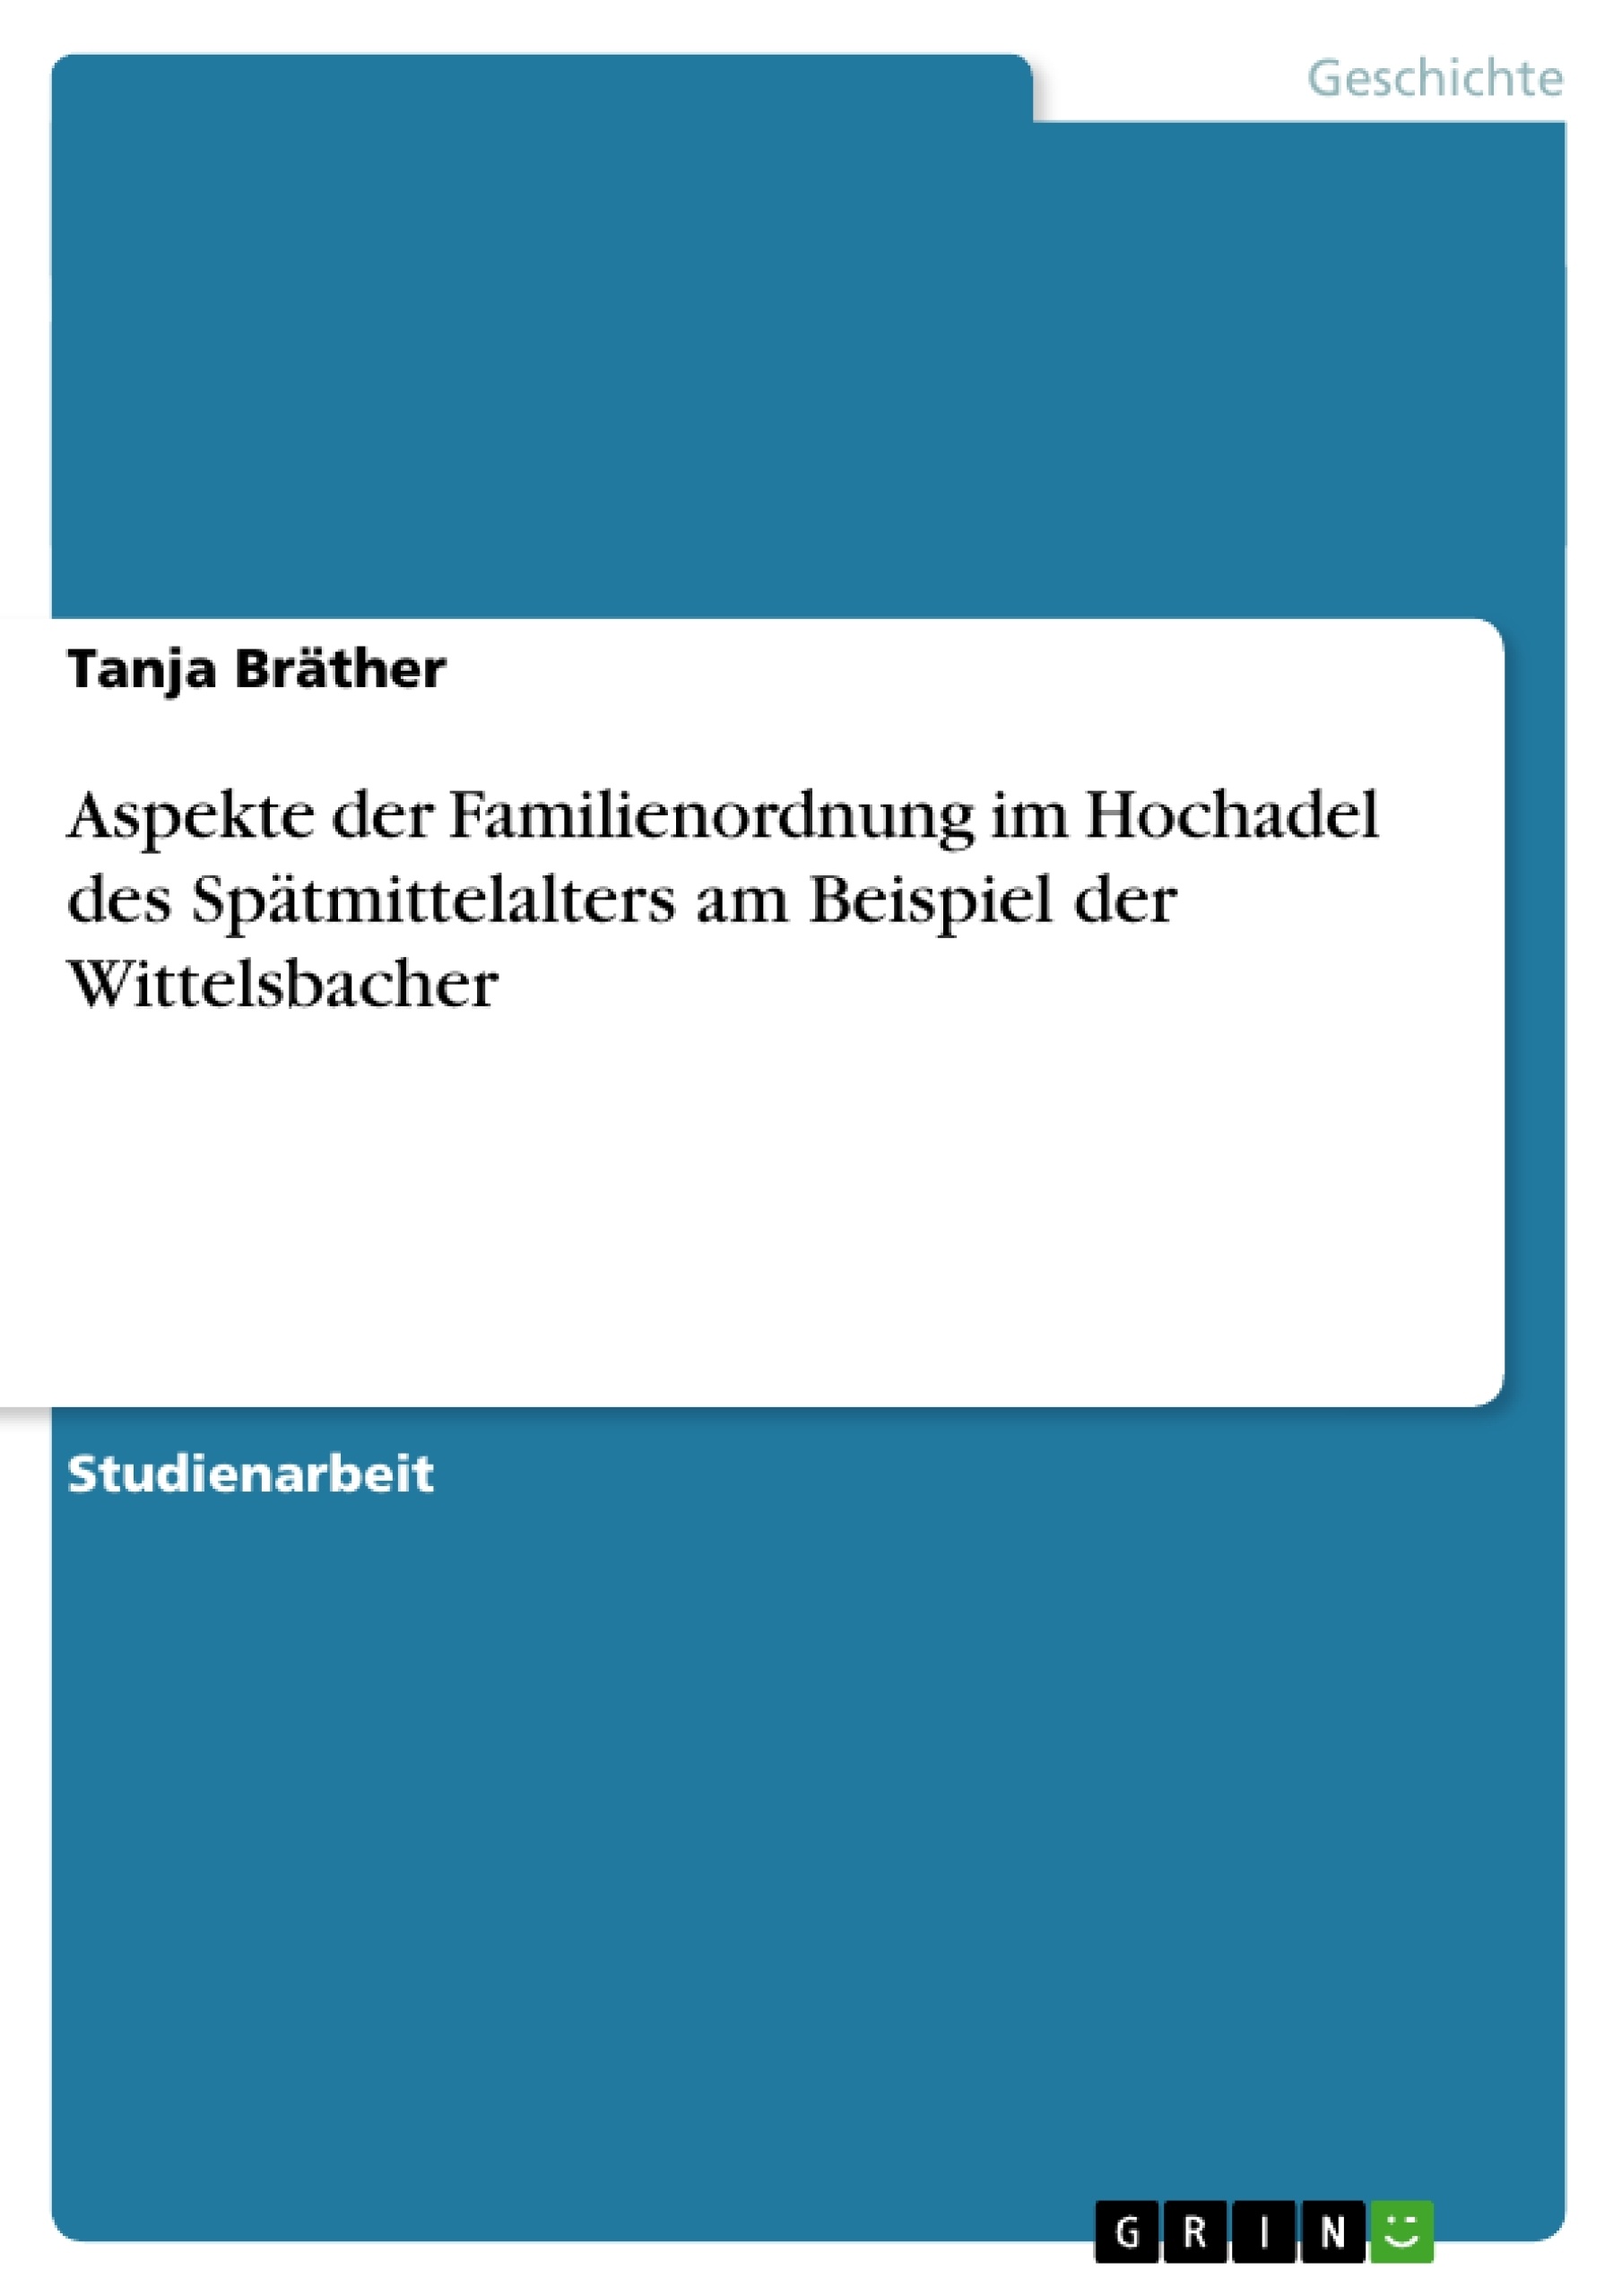 Title: Aspekte der Familienordnung im Hochadel des Spätmittelalters am Beispiel der Wittelsbacher